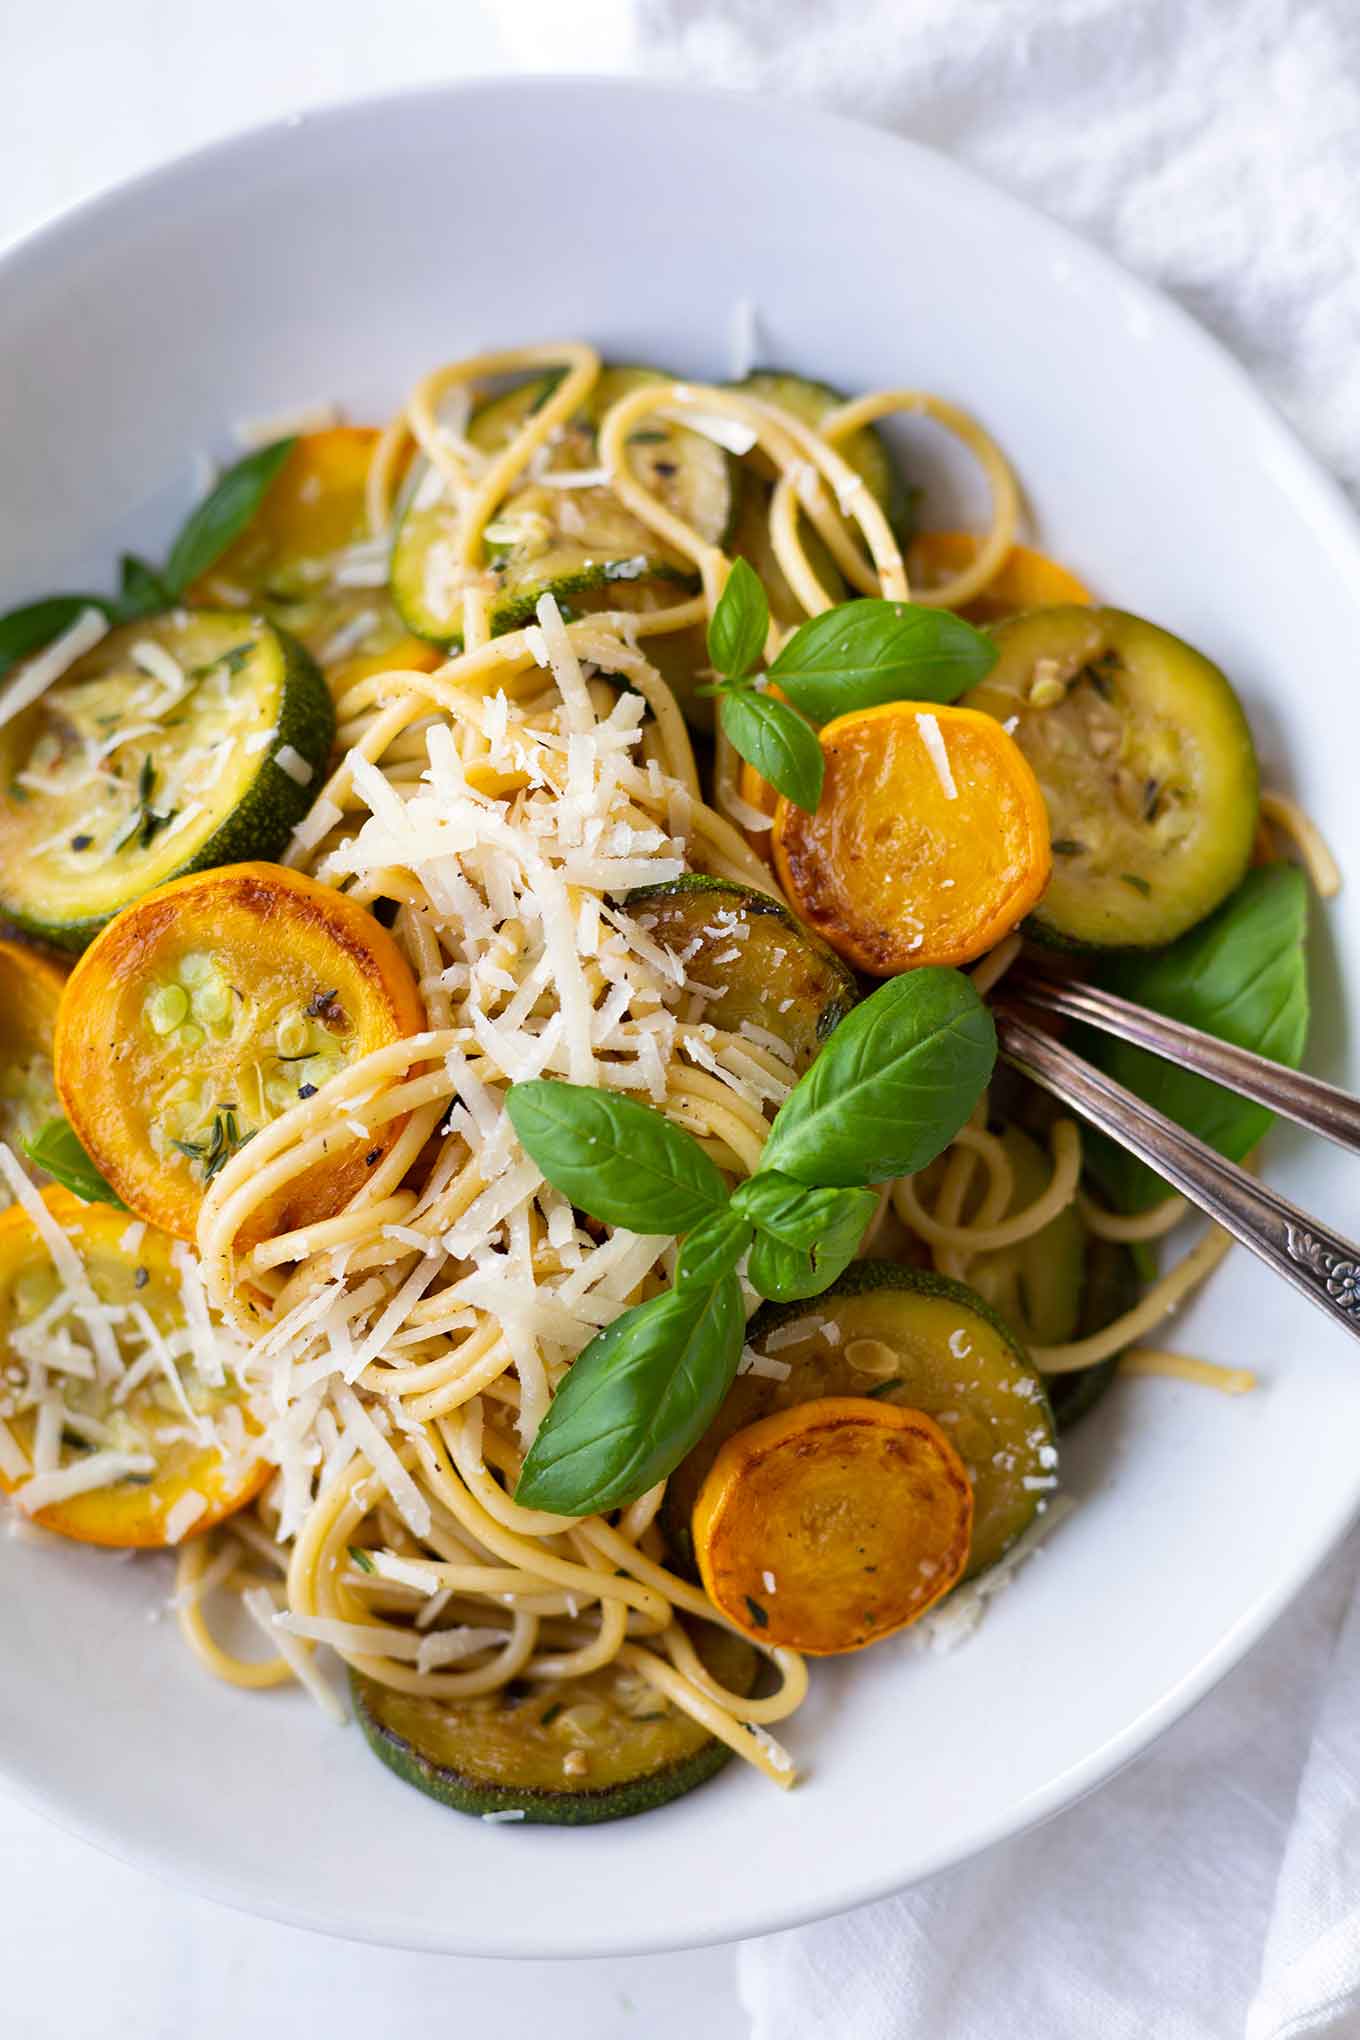 Schnelle Spaghetti mit Zucchini-Weißwein-Sauce. Dieses einfache 20-Minuten Rezept ist perfekt für den Sommer, super lecker und vegetarisch! - Kochkarussell.com #zucchini #spaghetti #pasta #sommer #kochkarussell